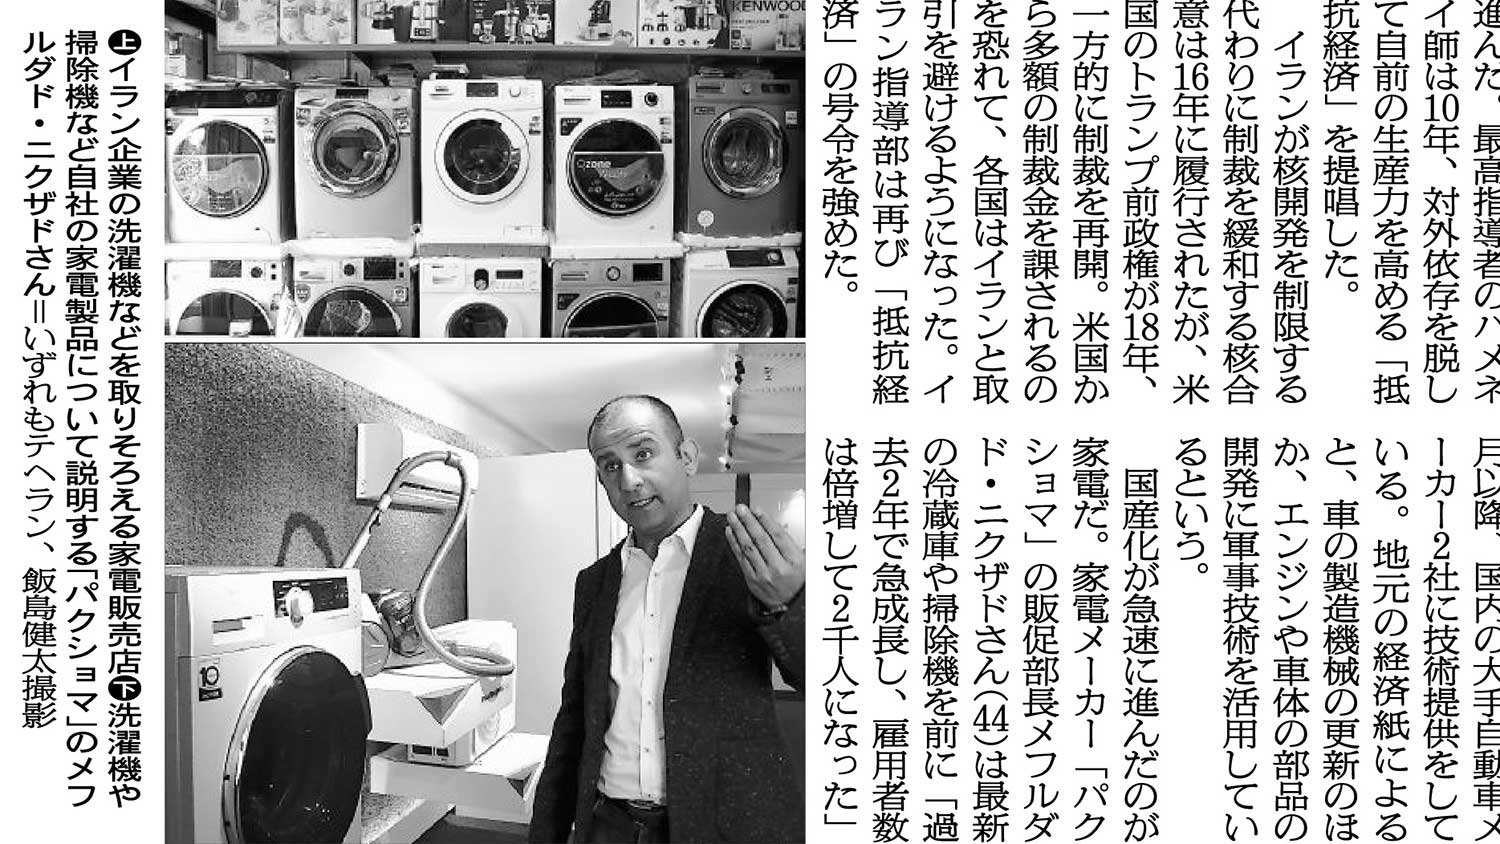 بررسی تحولات صنعت لوازم خانگی ایران و خبر سازی گروه پاکشوما در روزنامه آساهی ژاپن